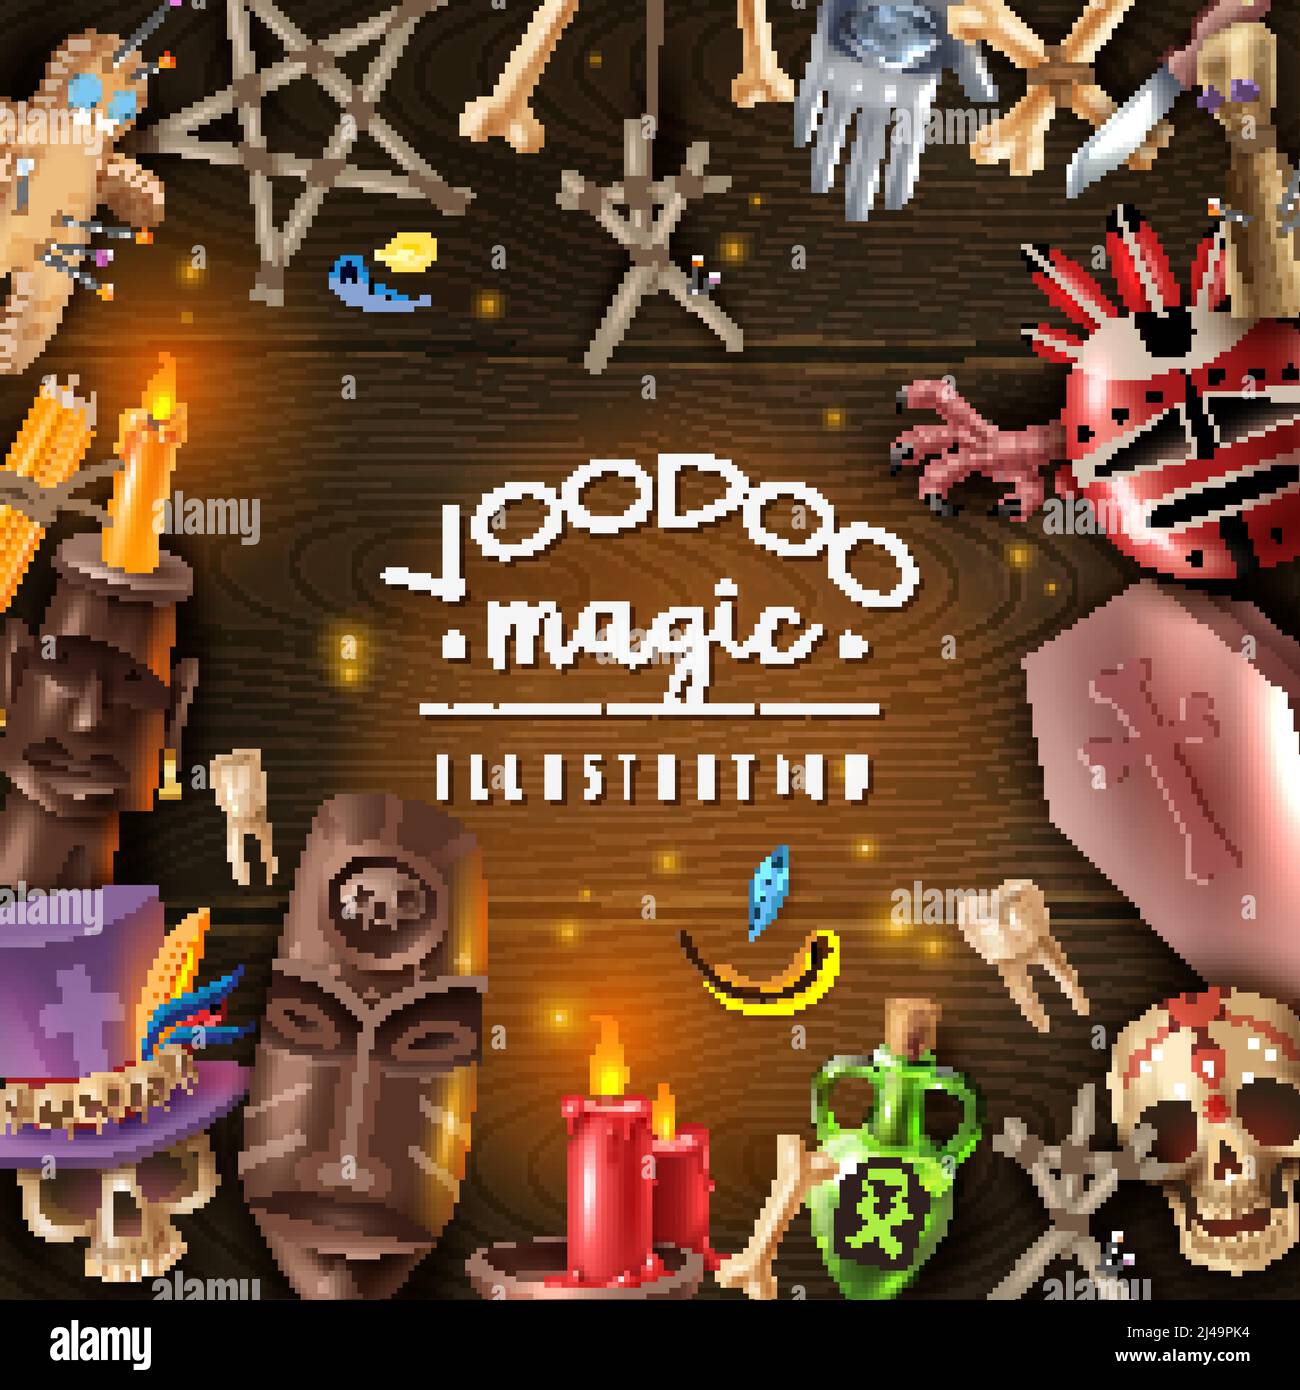 Voodoo culte mystère objets magiques attributs réaliste fond en bois sombre cadre avec tête de mort photophore épingles de poupée illustration vectorielle Illustration de Vecteur